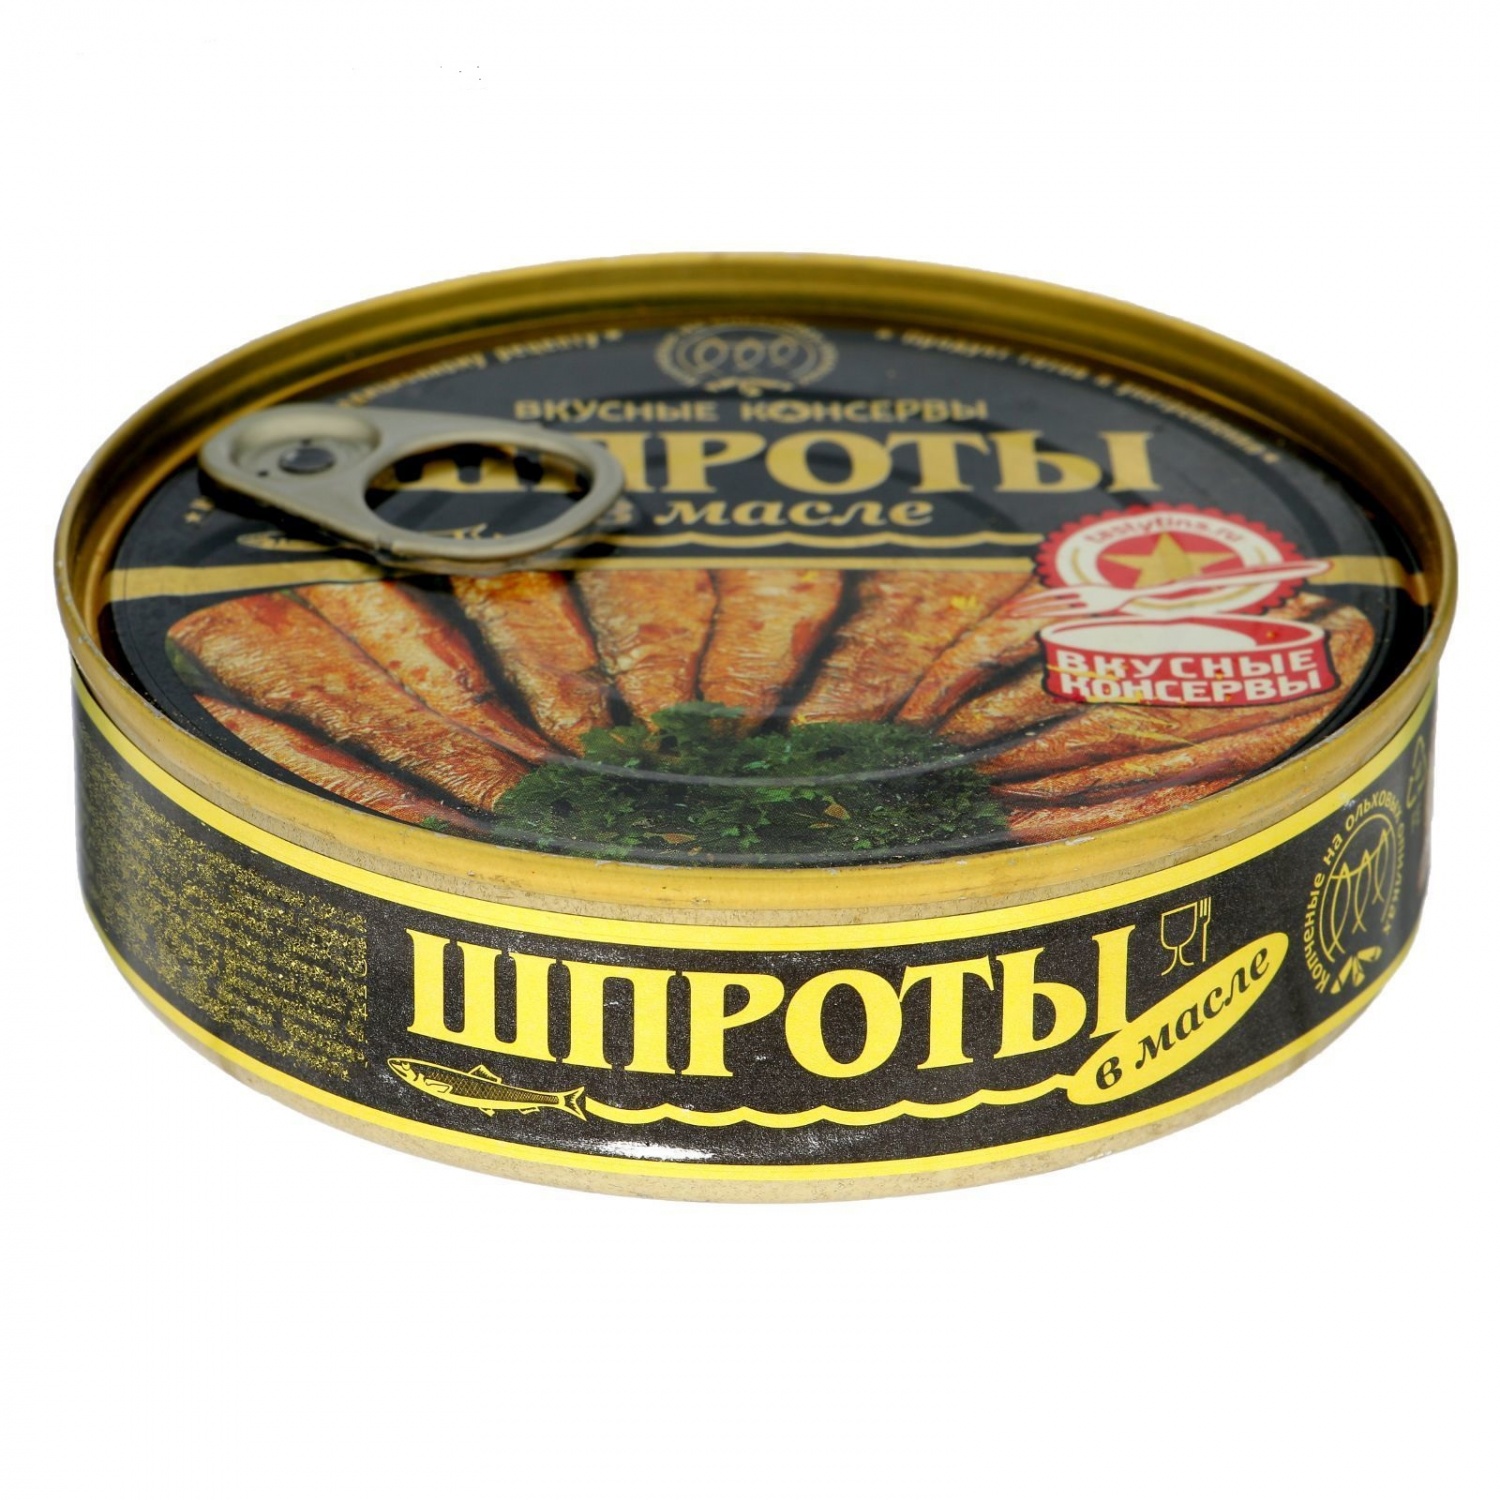 Рыбные консервы "Шпроты" в масле 160 гр